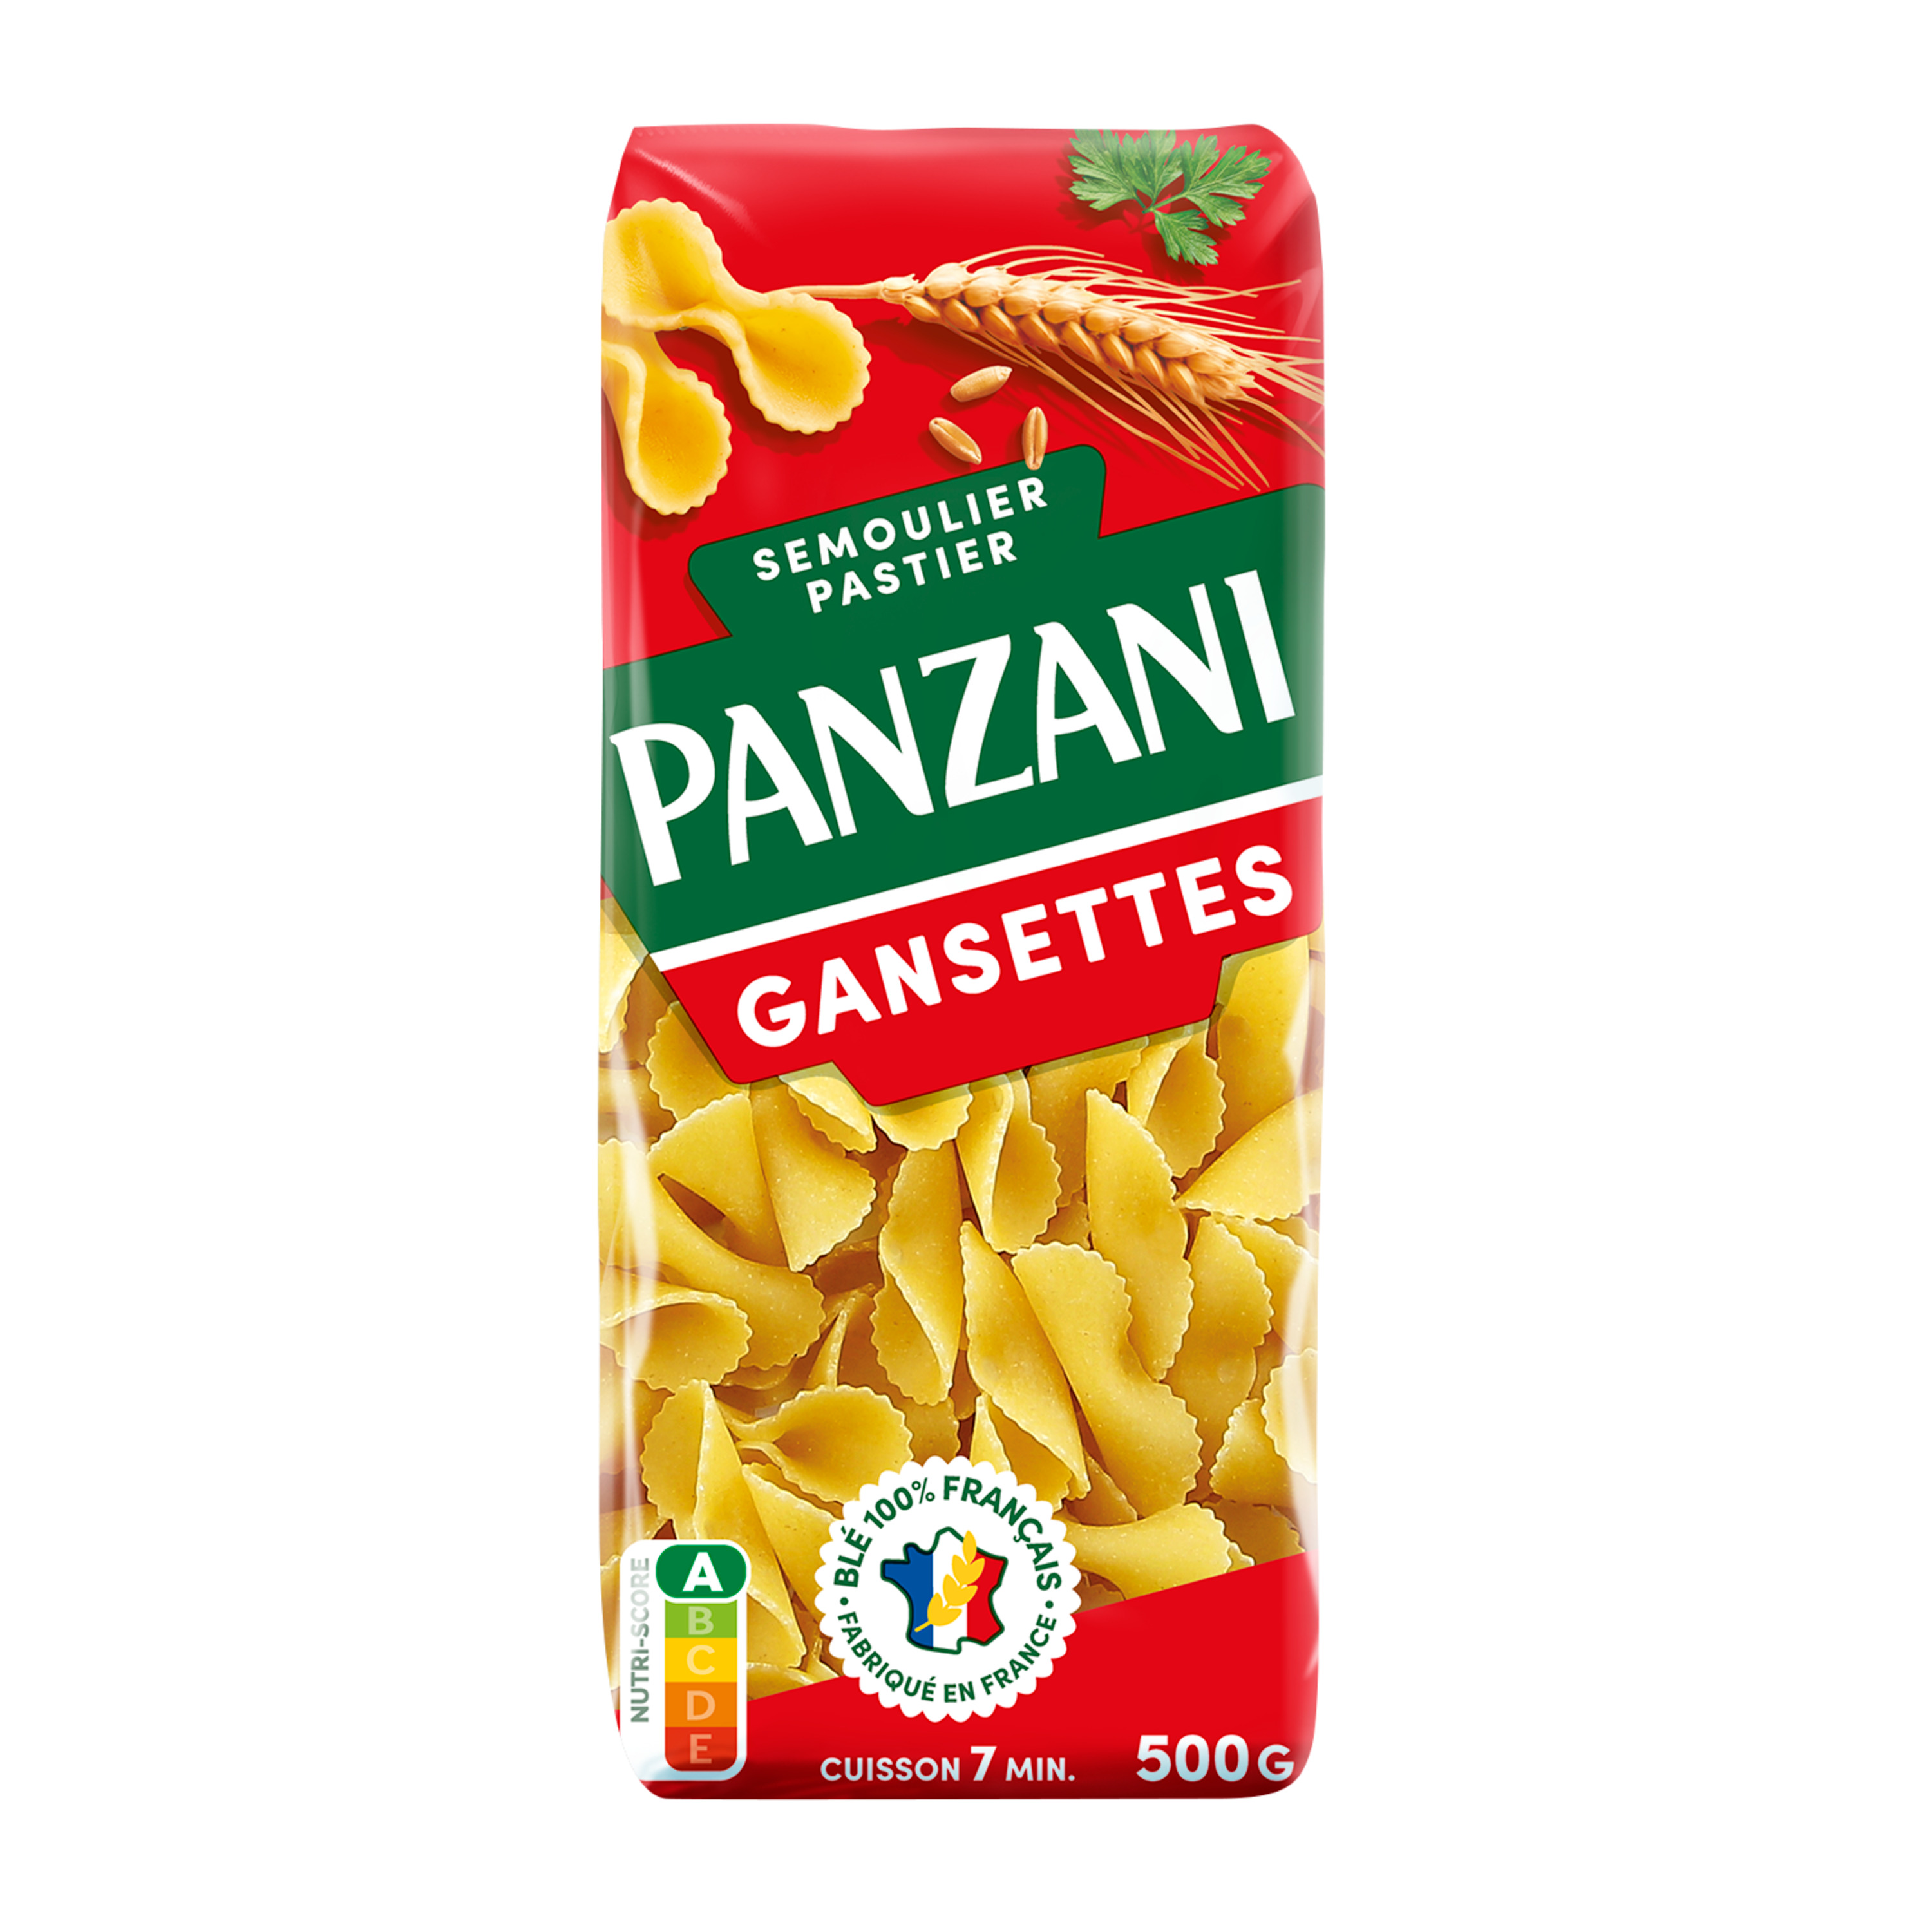 PANZANI Gansettes filière blé responsable français 500g pas cher